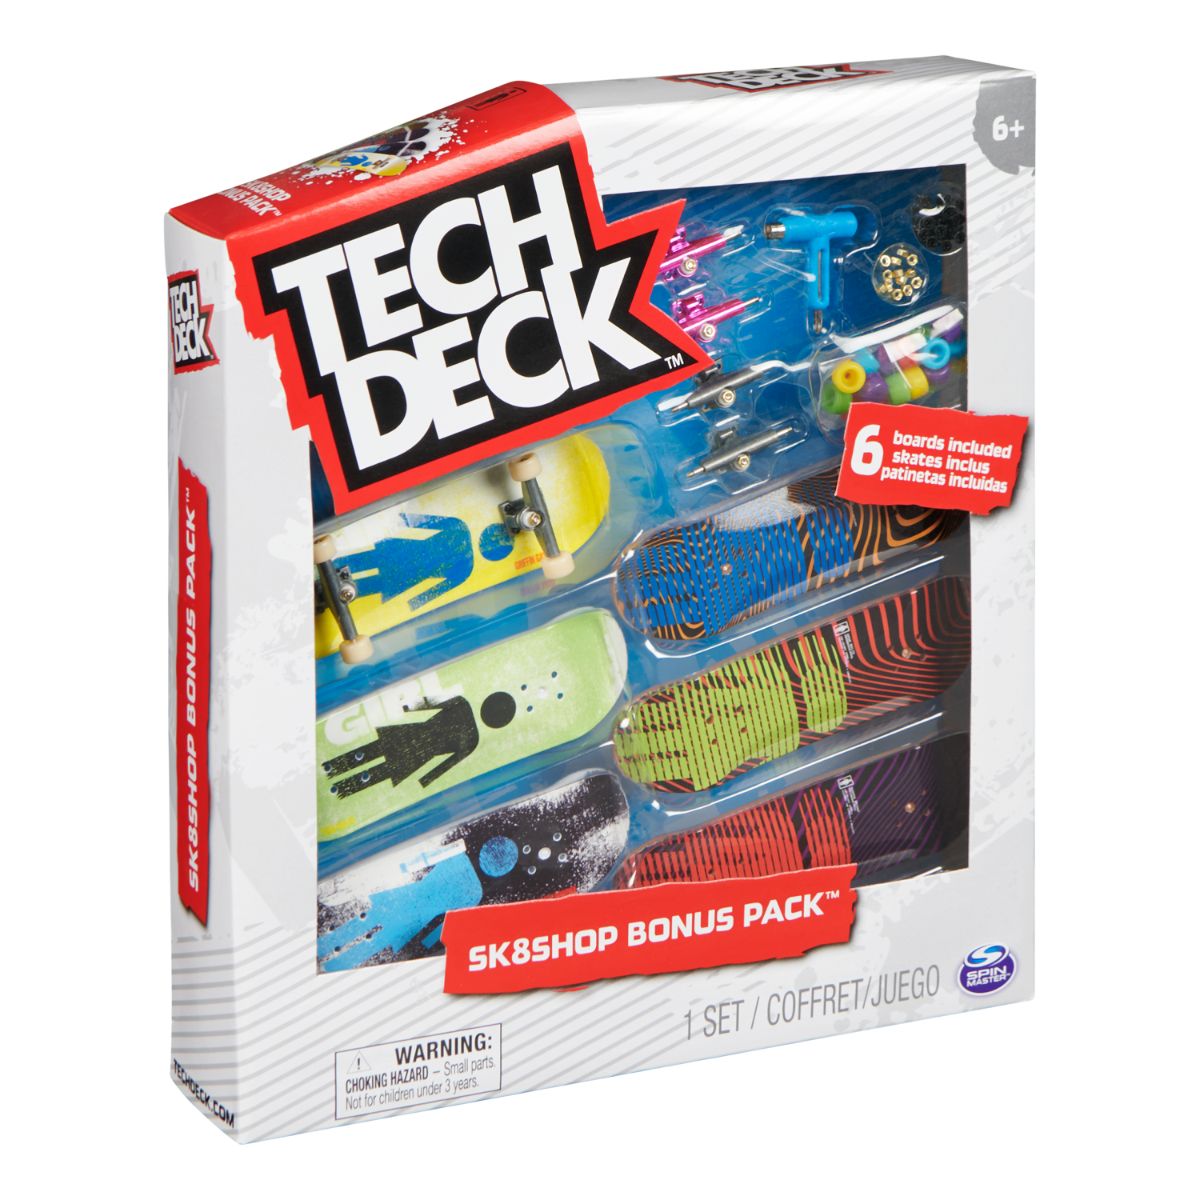 Set 6 mini placi skateboard, Tech Deck, Bonus Pack 20136705